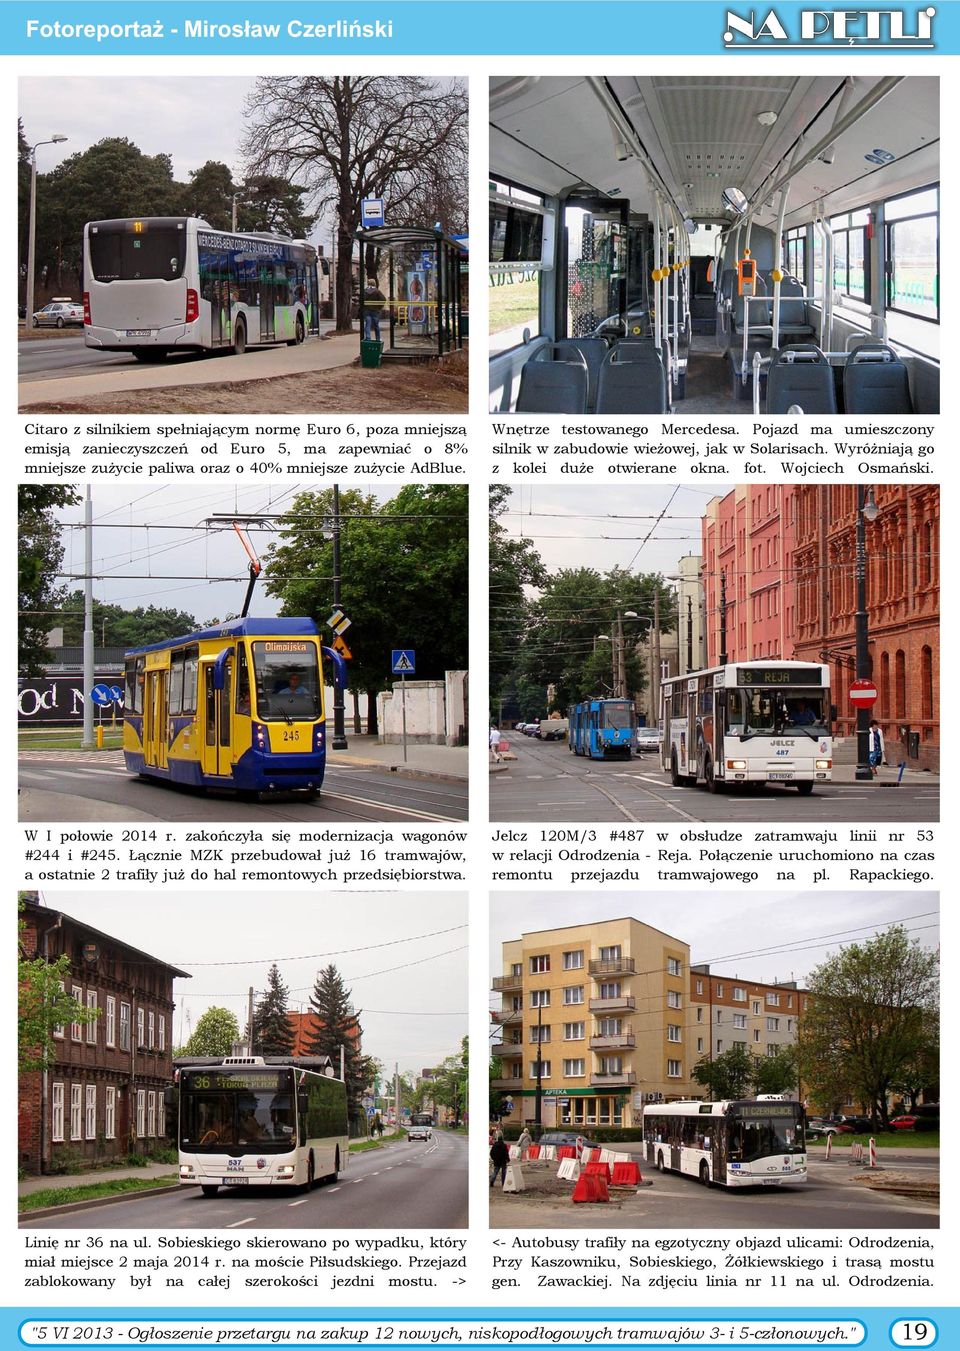 zakończyła się modernizacja wagonów #244 i #245. Łącznie MZK przebudował już 16 tramwajów, a ostatnie 2 trafiły już do hal remontowych przedsiębiorstwa.